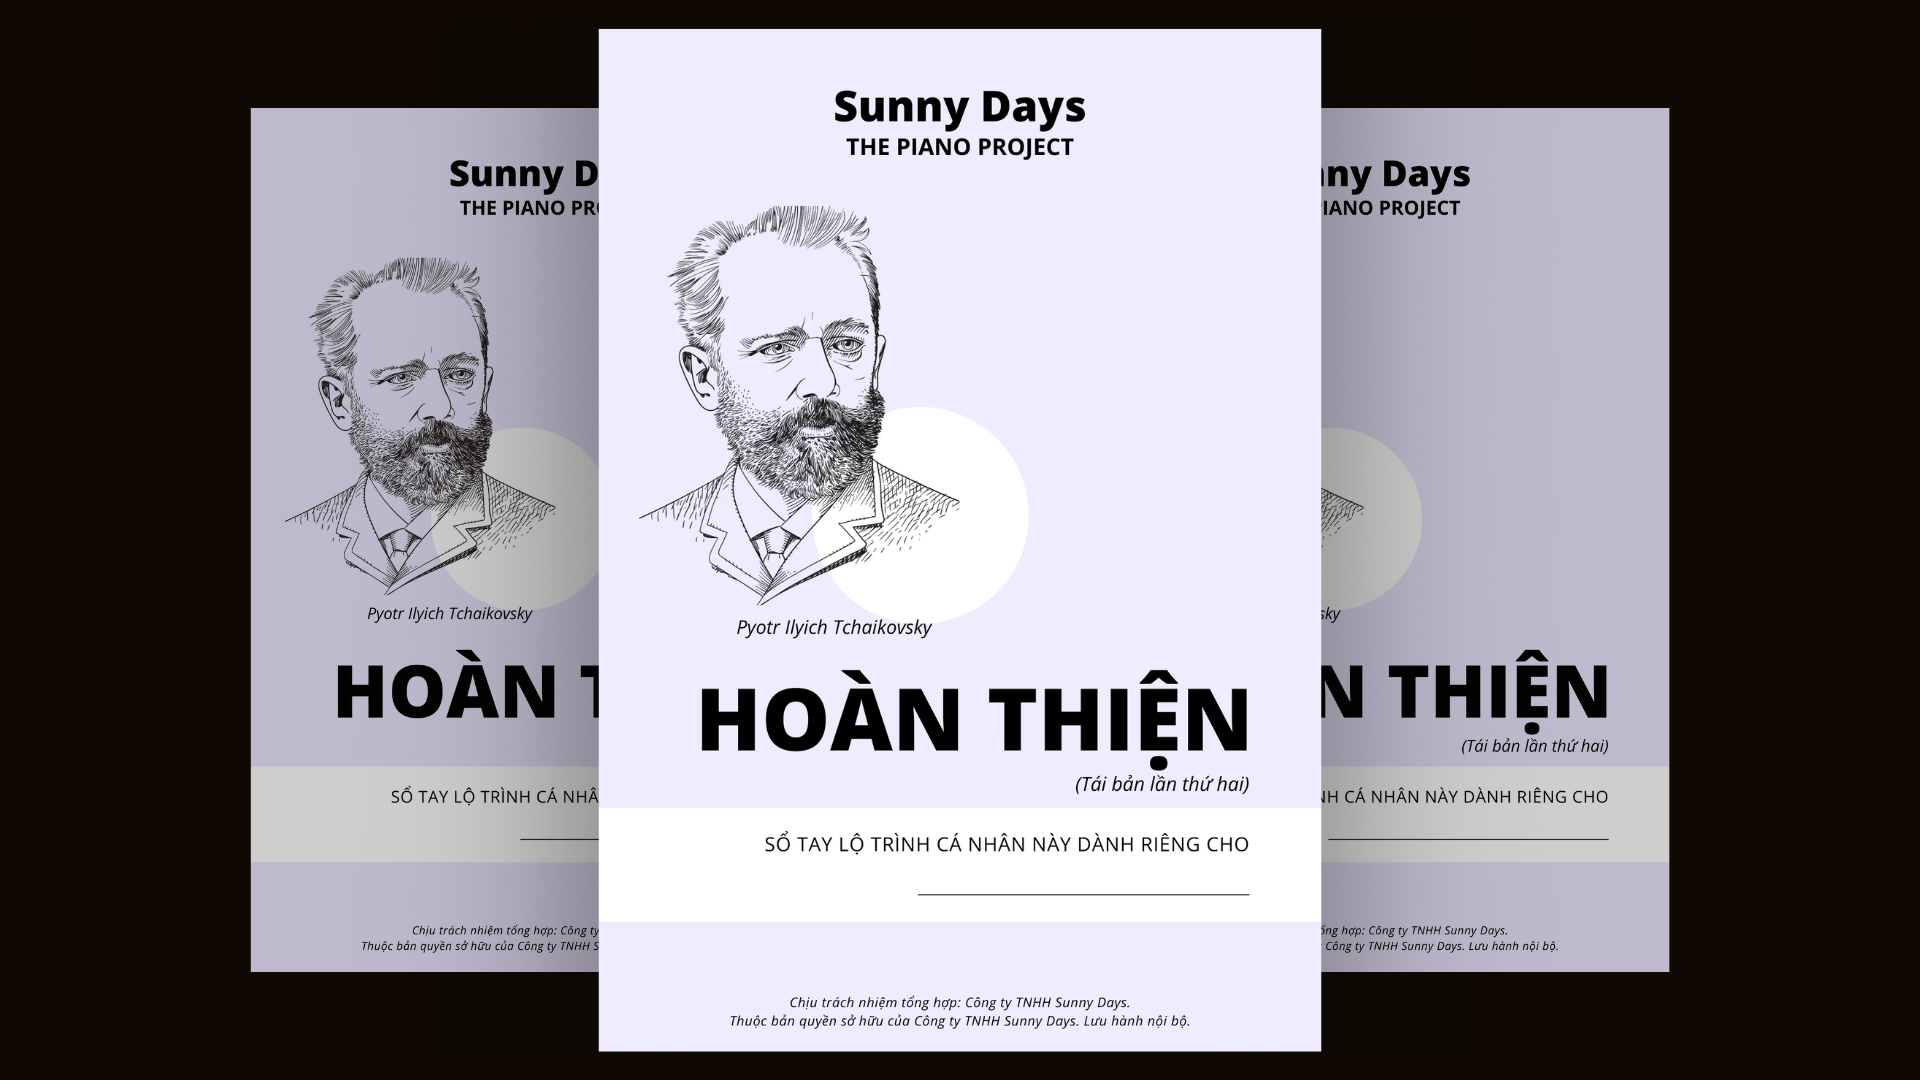 SND HoanThien 1 Sunny Days